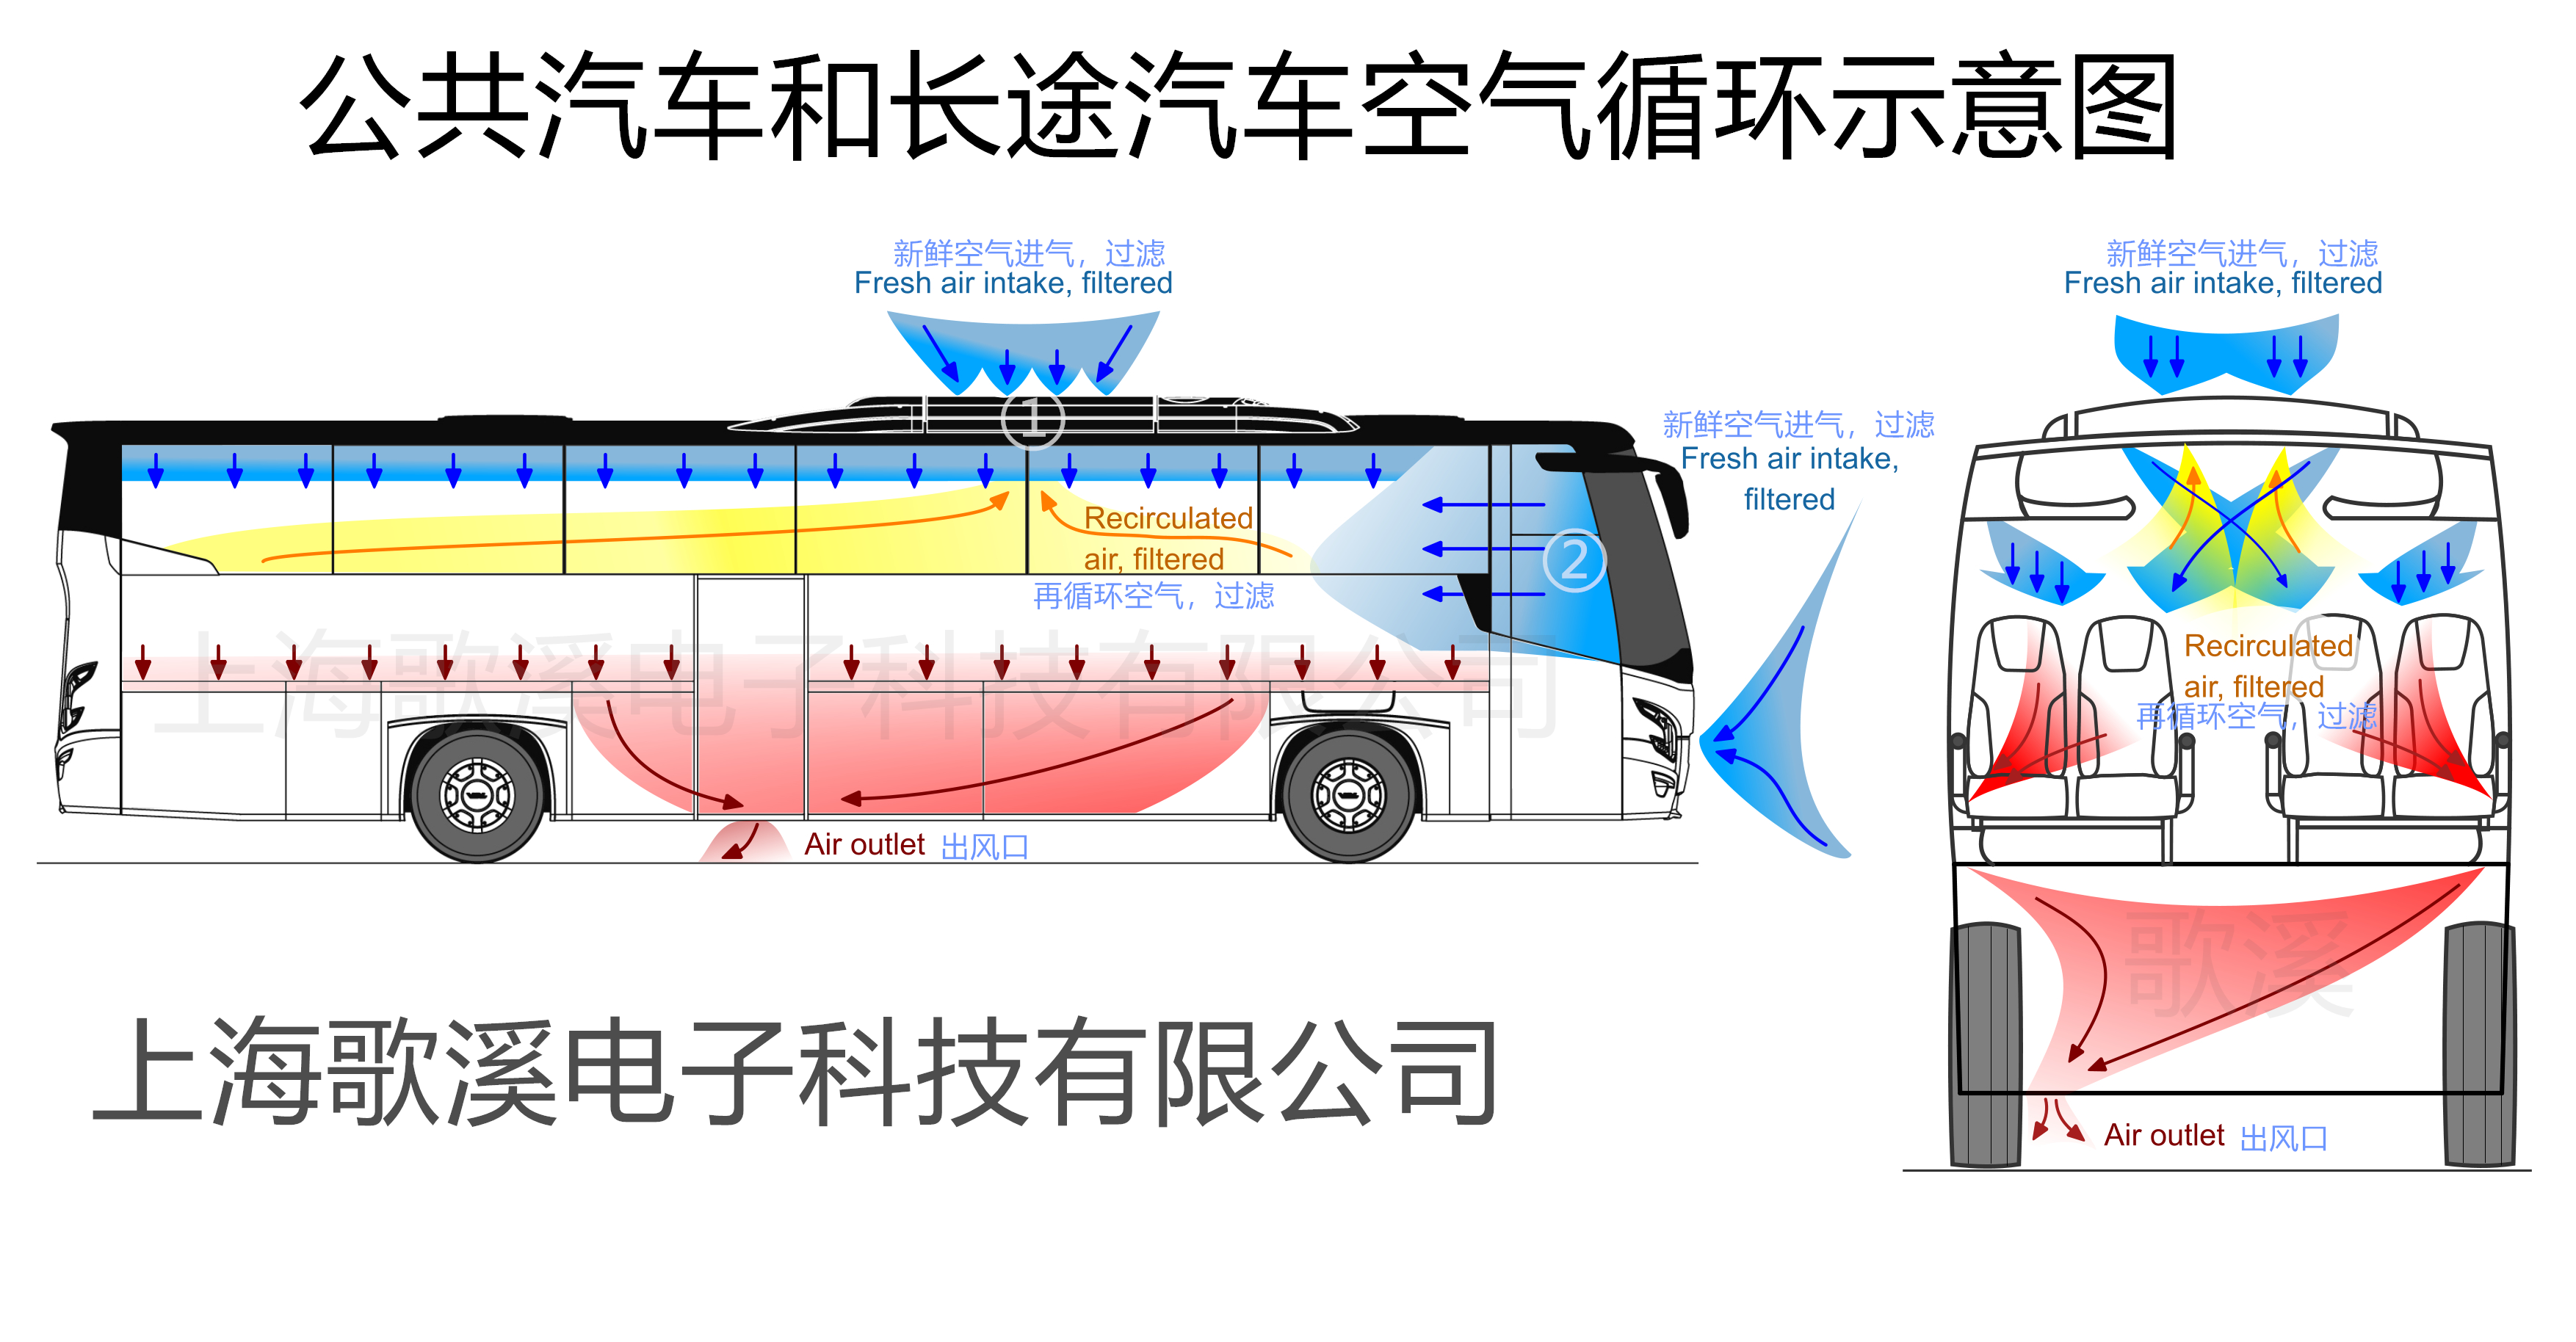 公共汽车和长途汽车应用方案推荐(图1)